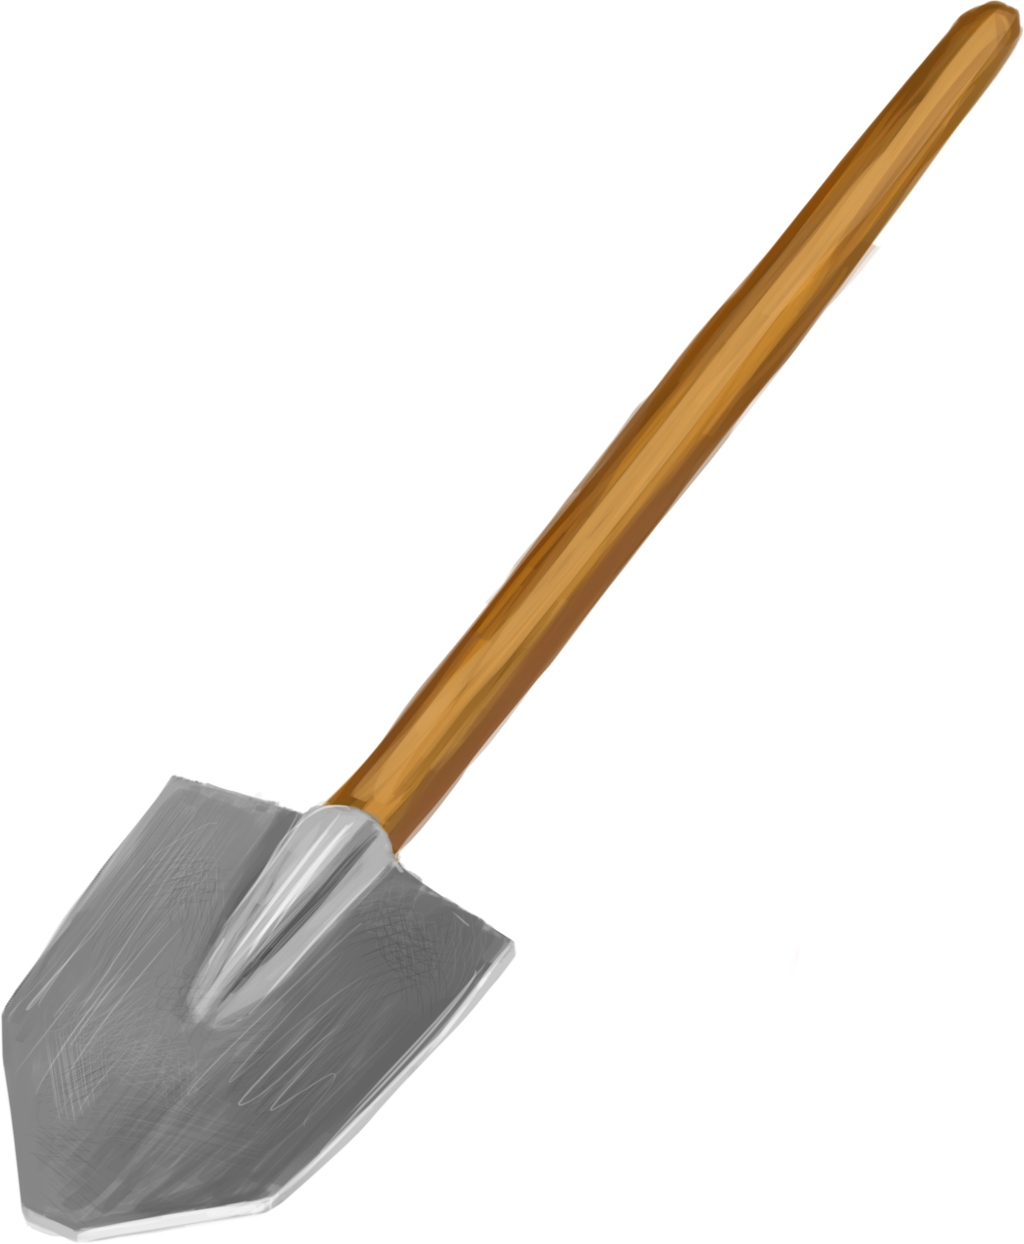 tools and parts · shovels